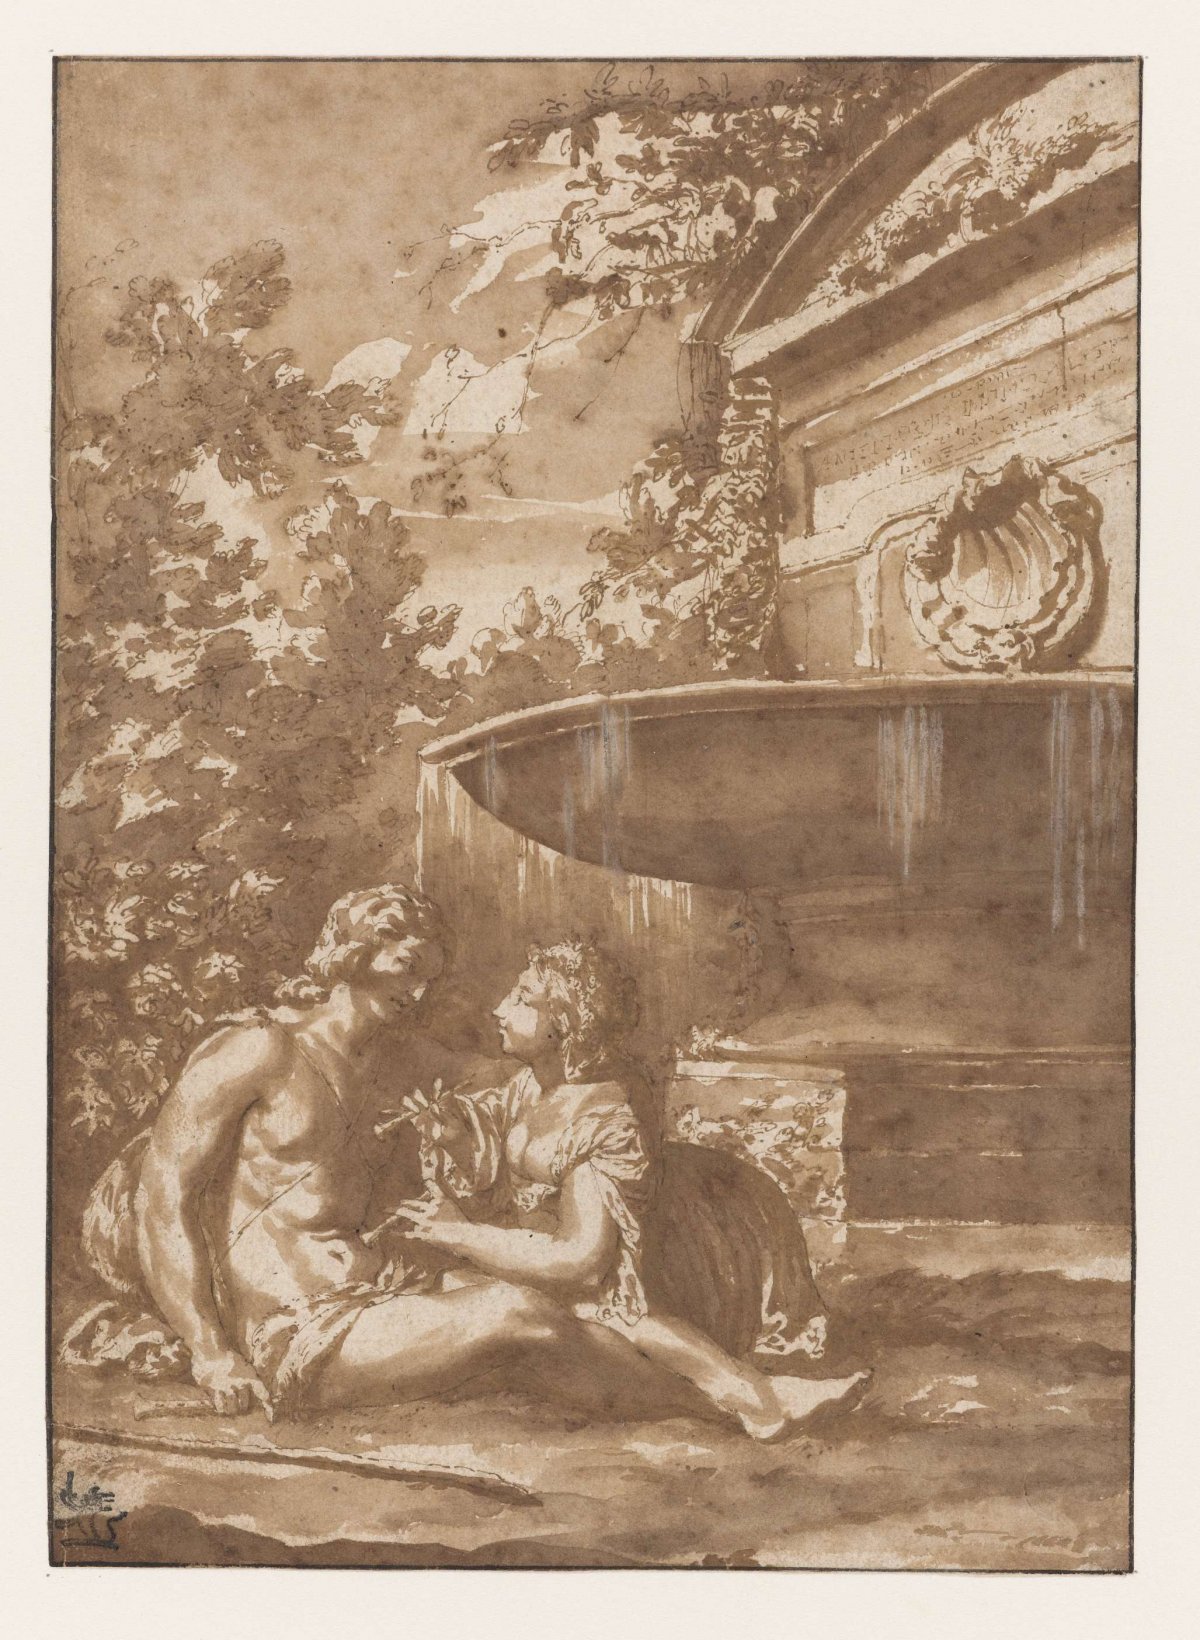 Idyll by a fountain, Jan de Bisschop, 1667